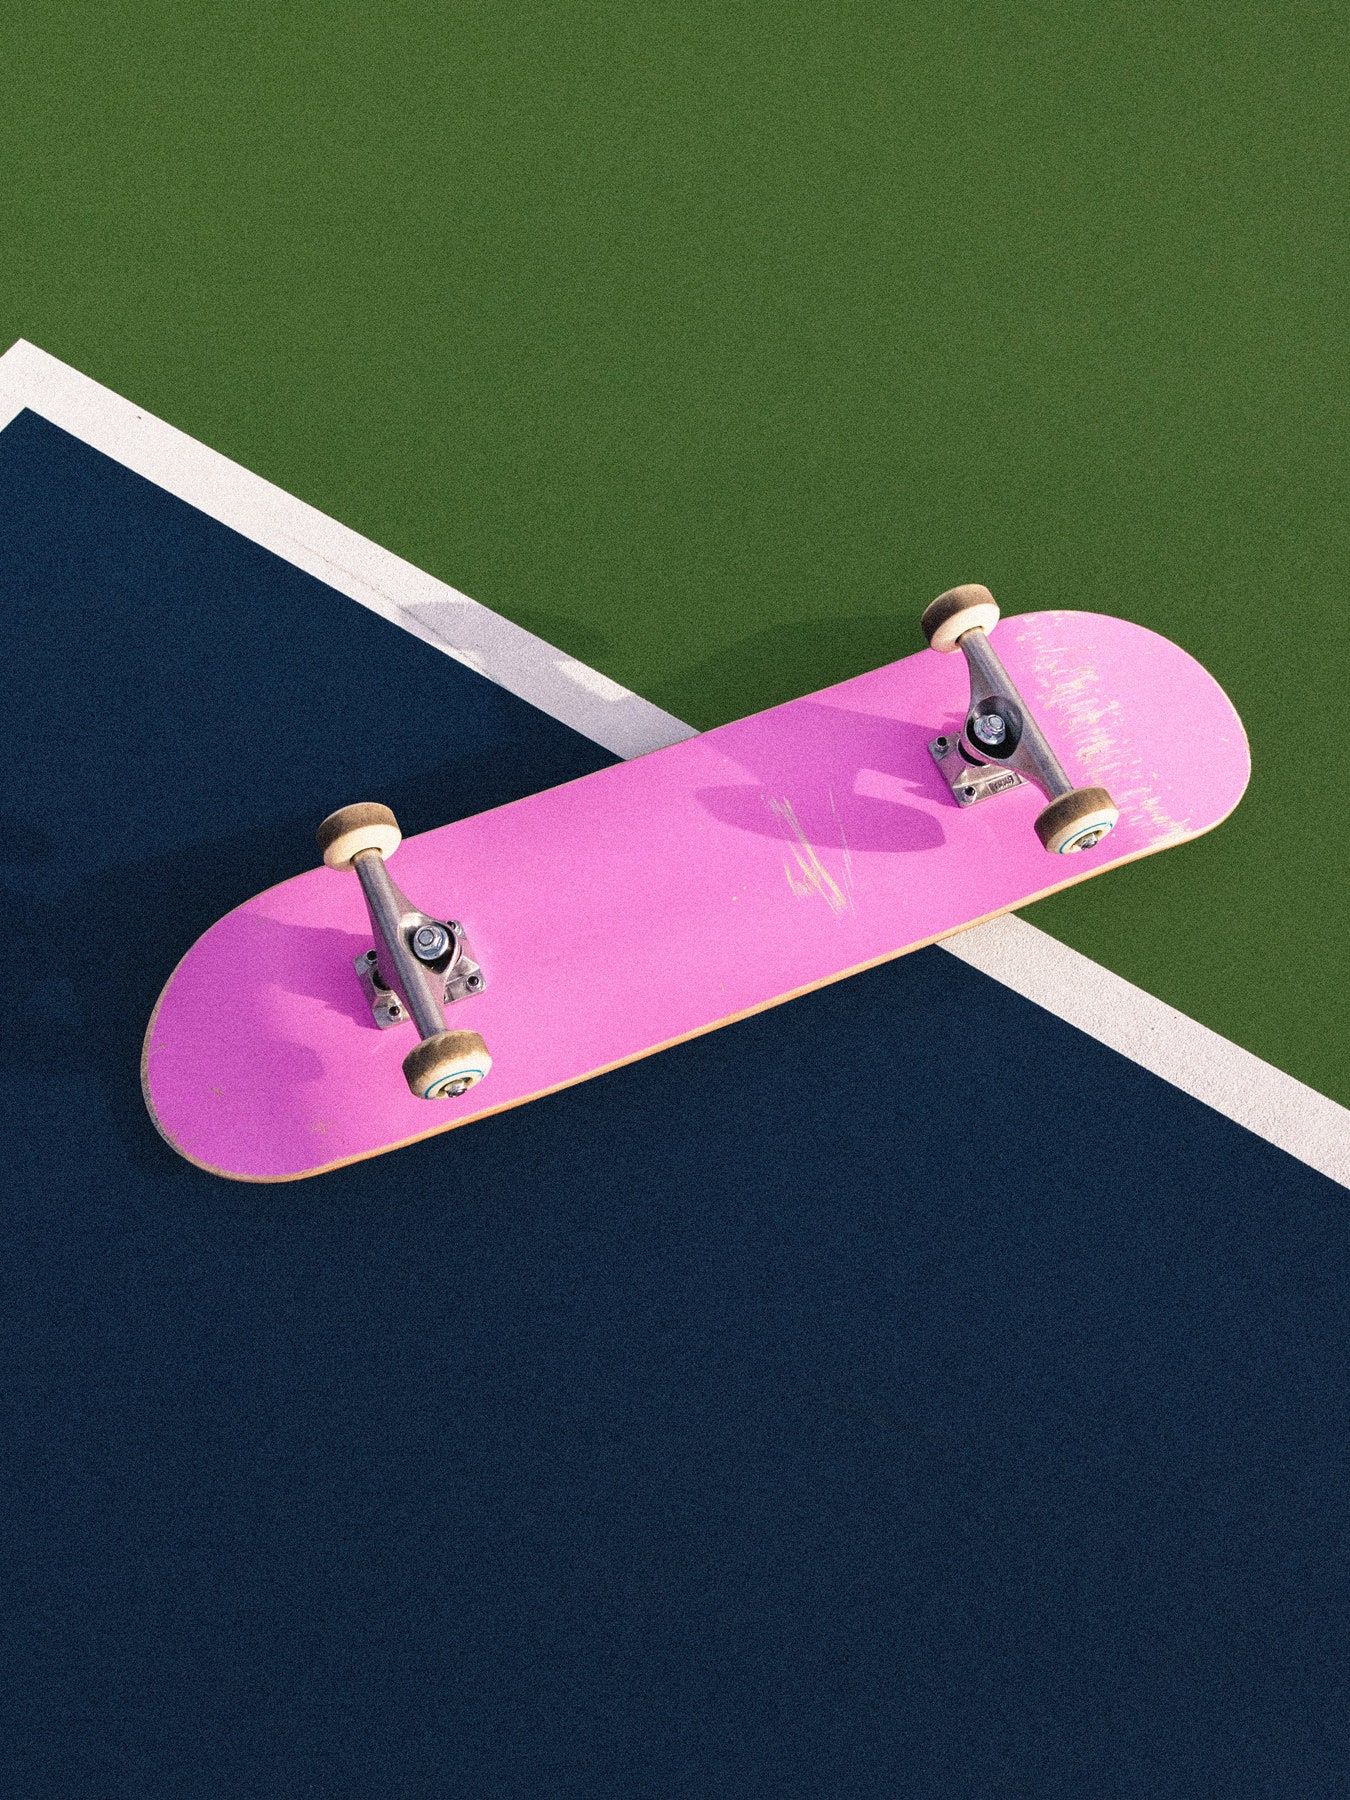 A pink skateboard on a tennis court - Skate